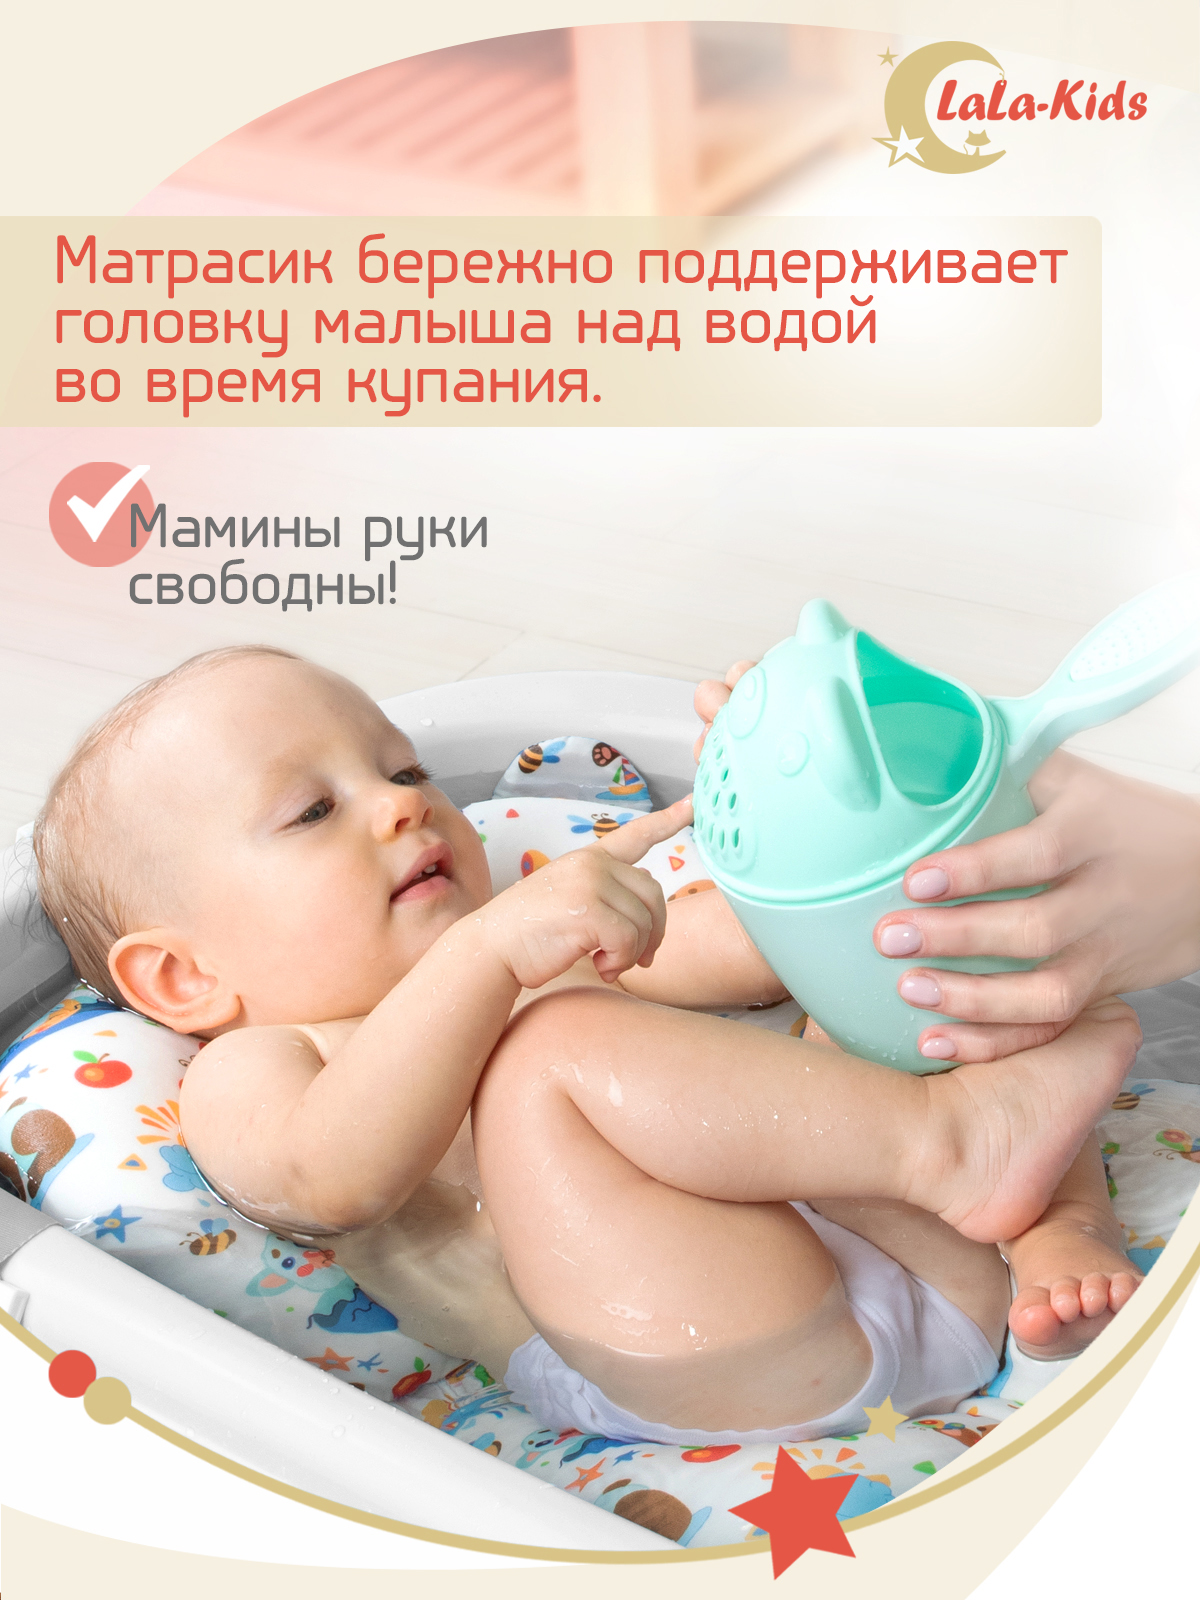 Детская ванночка с термометром LaLa-Kids складная с матрасиком коричневым в комплекте - фото 10